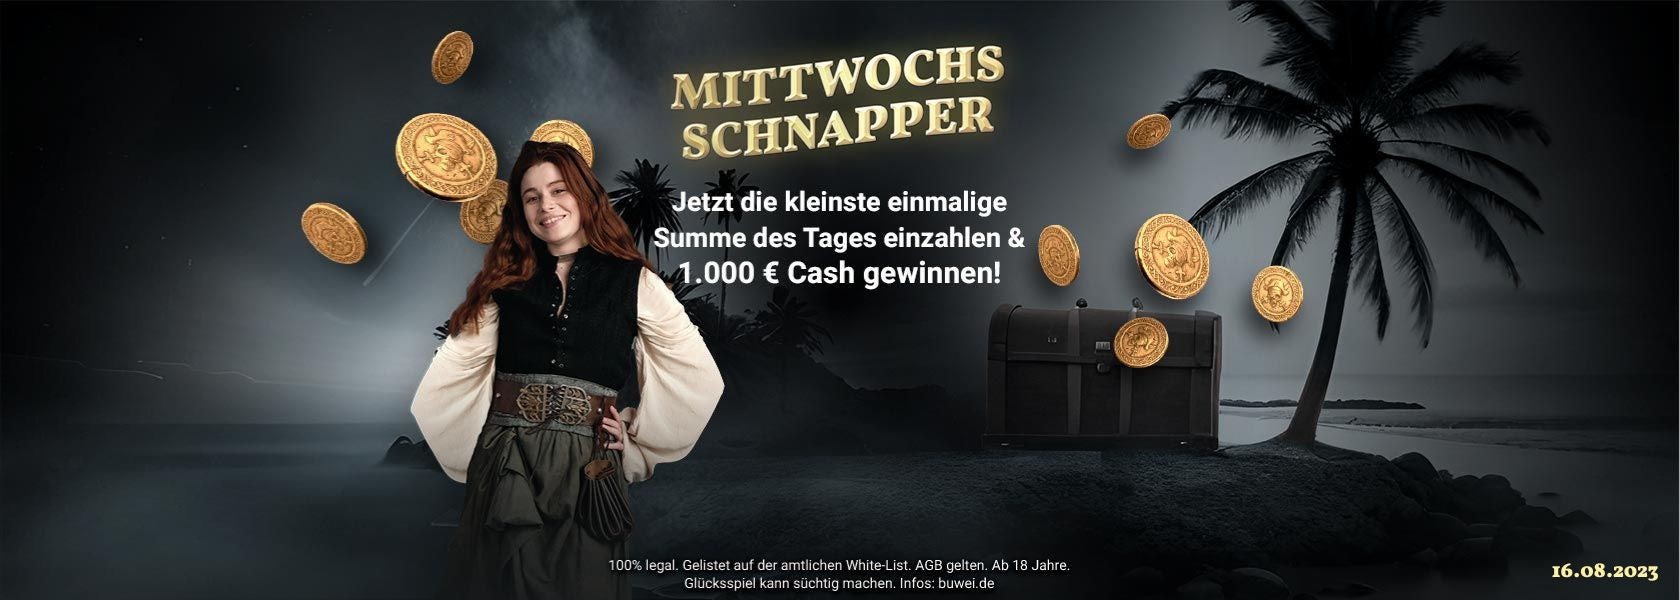 jackpotpiraten-mittwochs-schnapper-160823